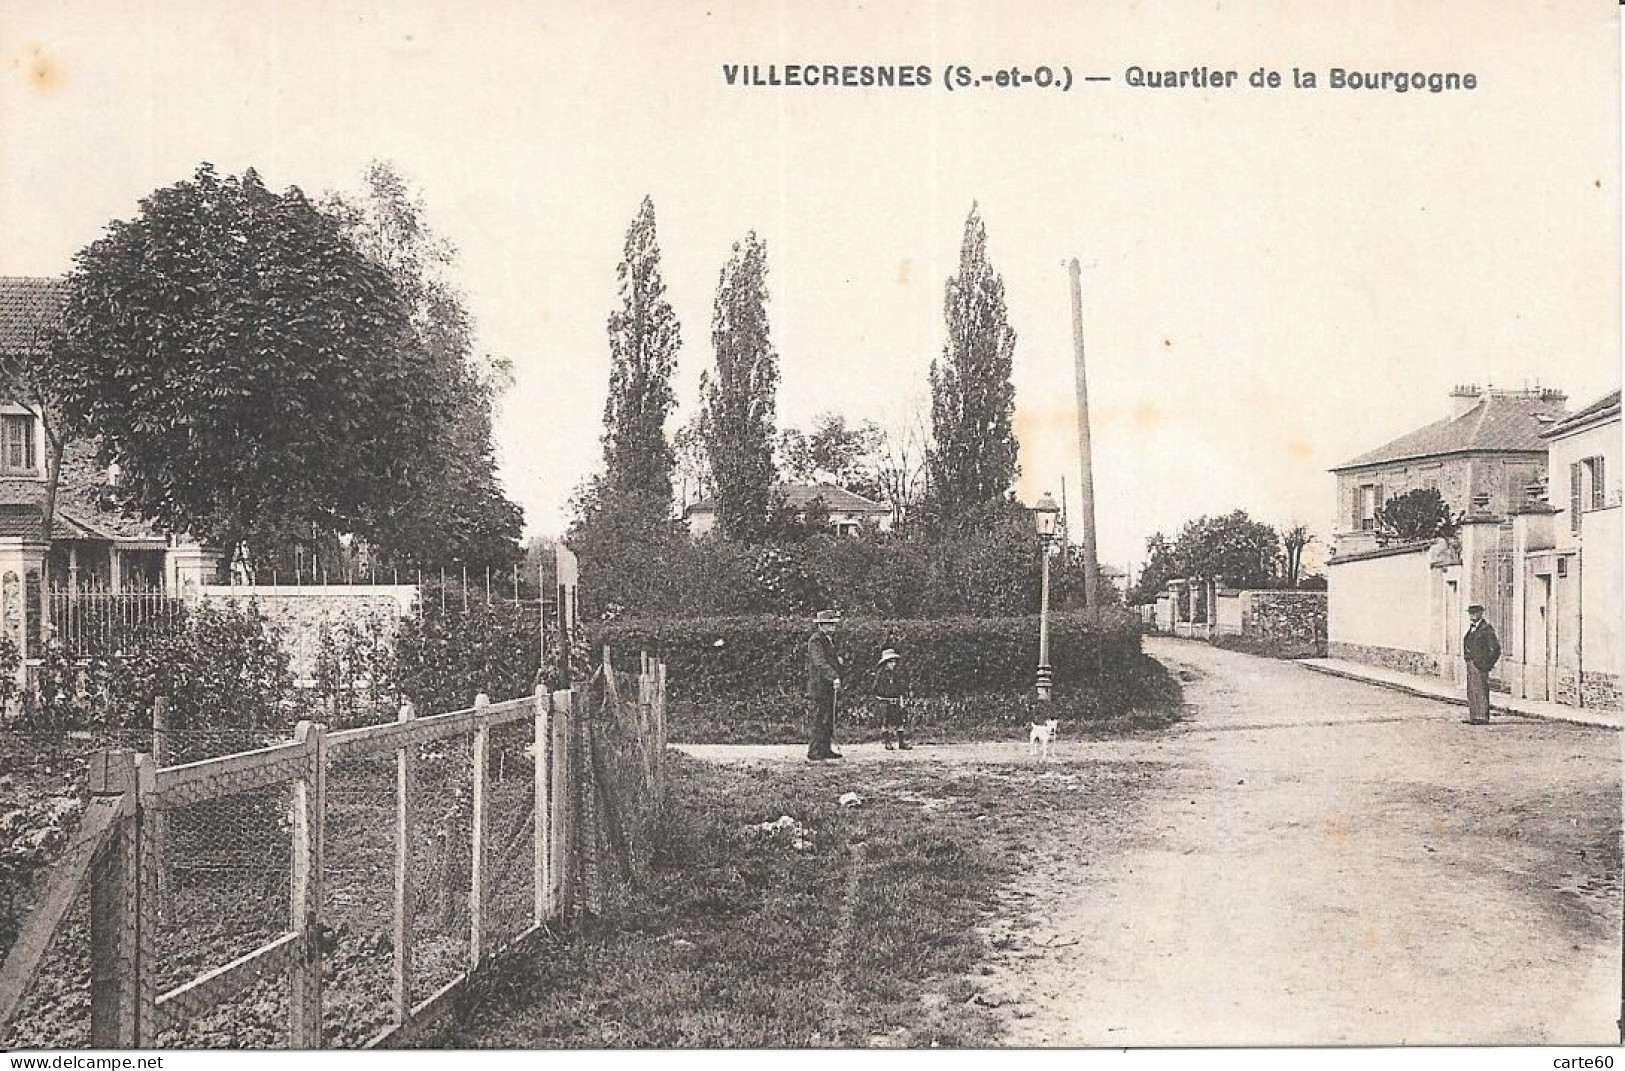 VILLECRENES - QUARTIER DE LA BOURGOGNE - Villecresnes